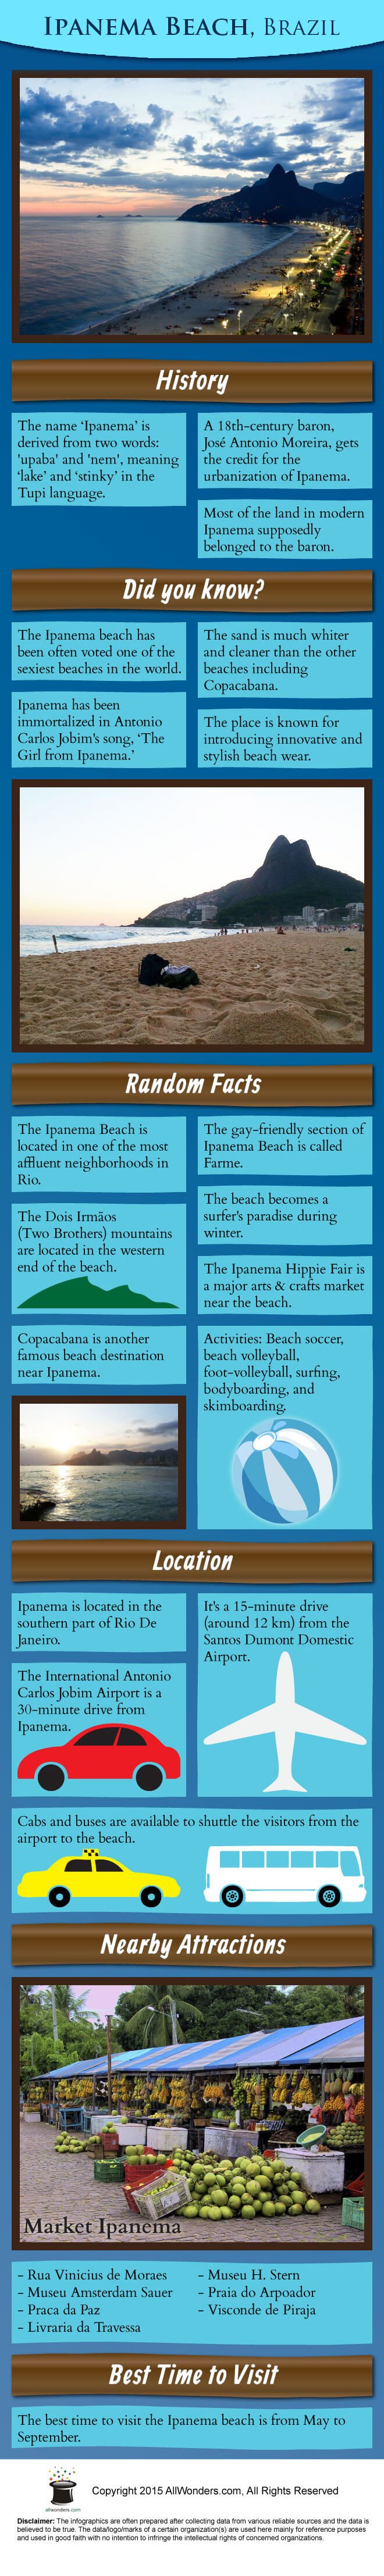 Ipanema Beach Infographic